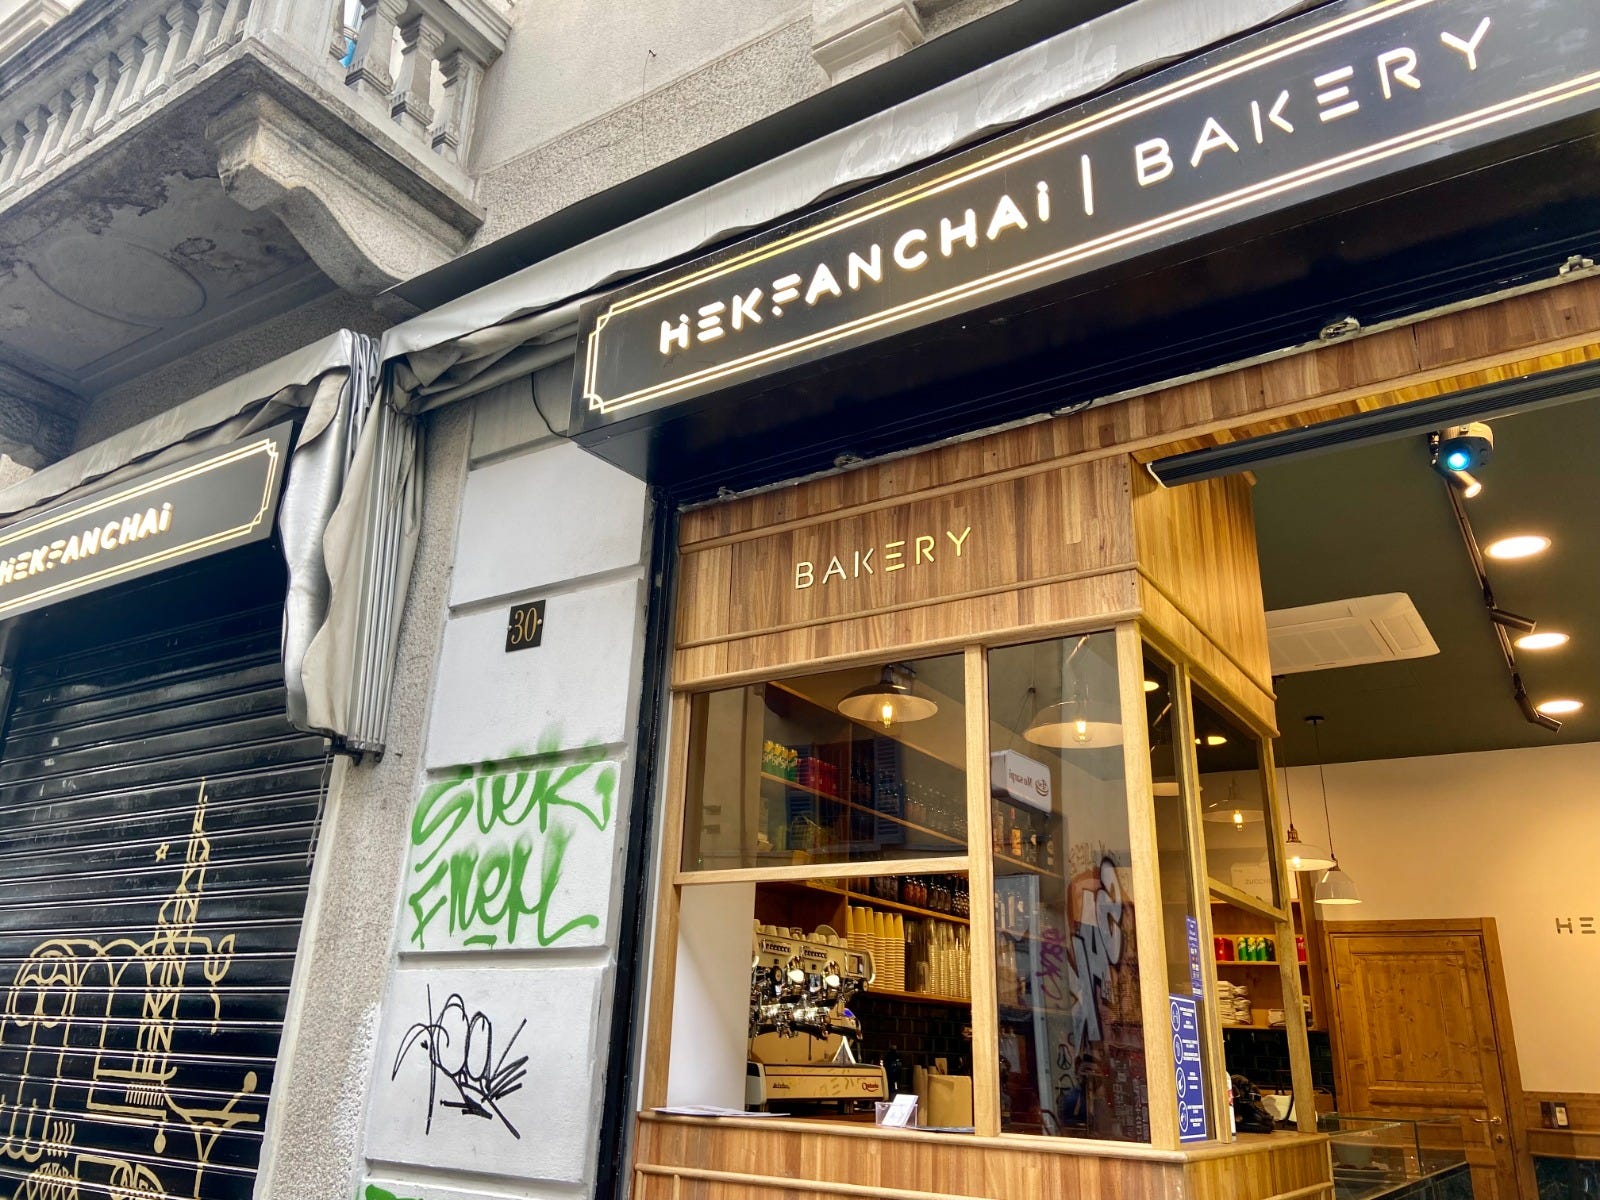 Il format inedito dedicato alla tradizionale pasticceria di Hong Kong Hekfanchai Bakery a Milano la tradizionale pasticceria di Hong Kong